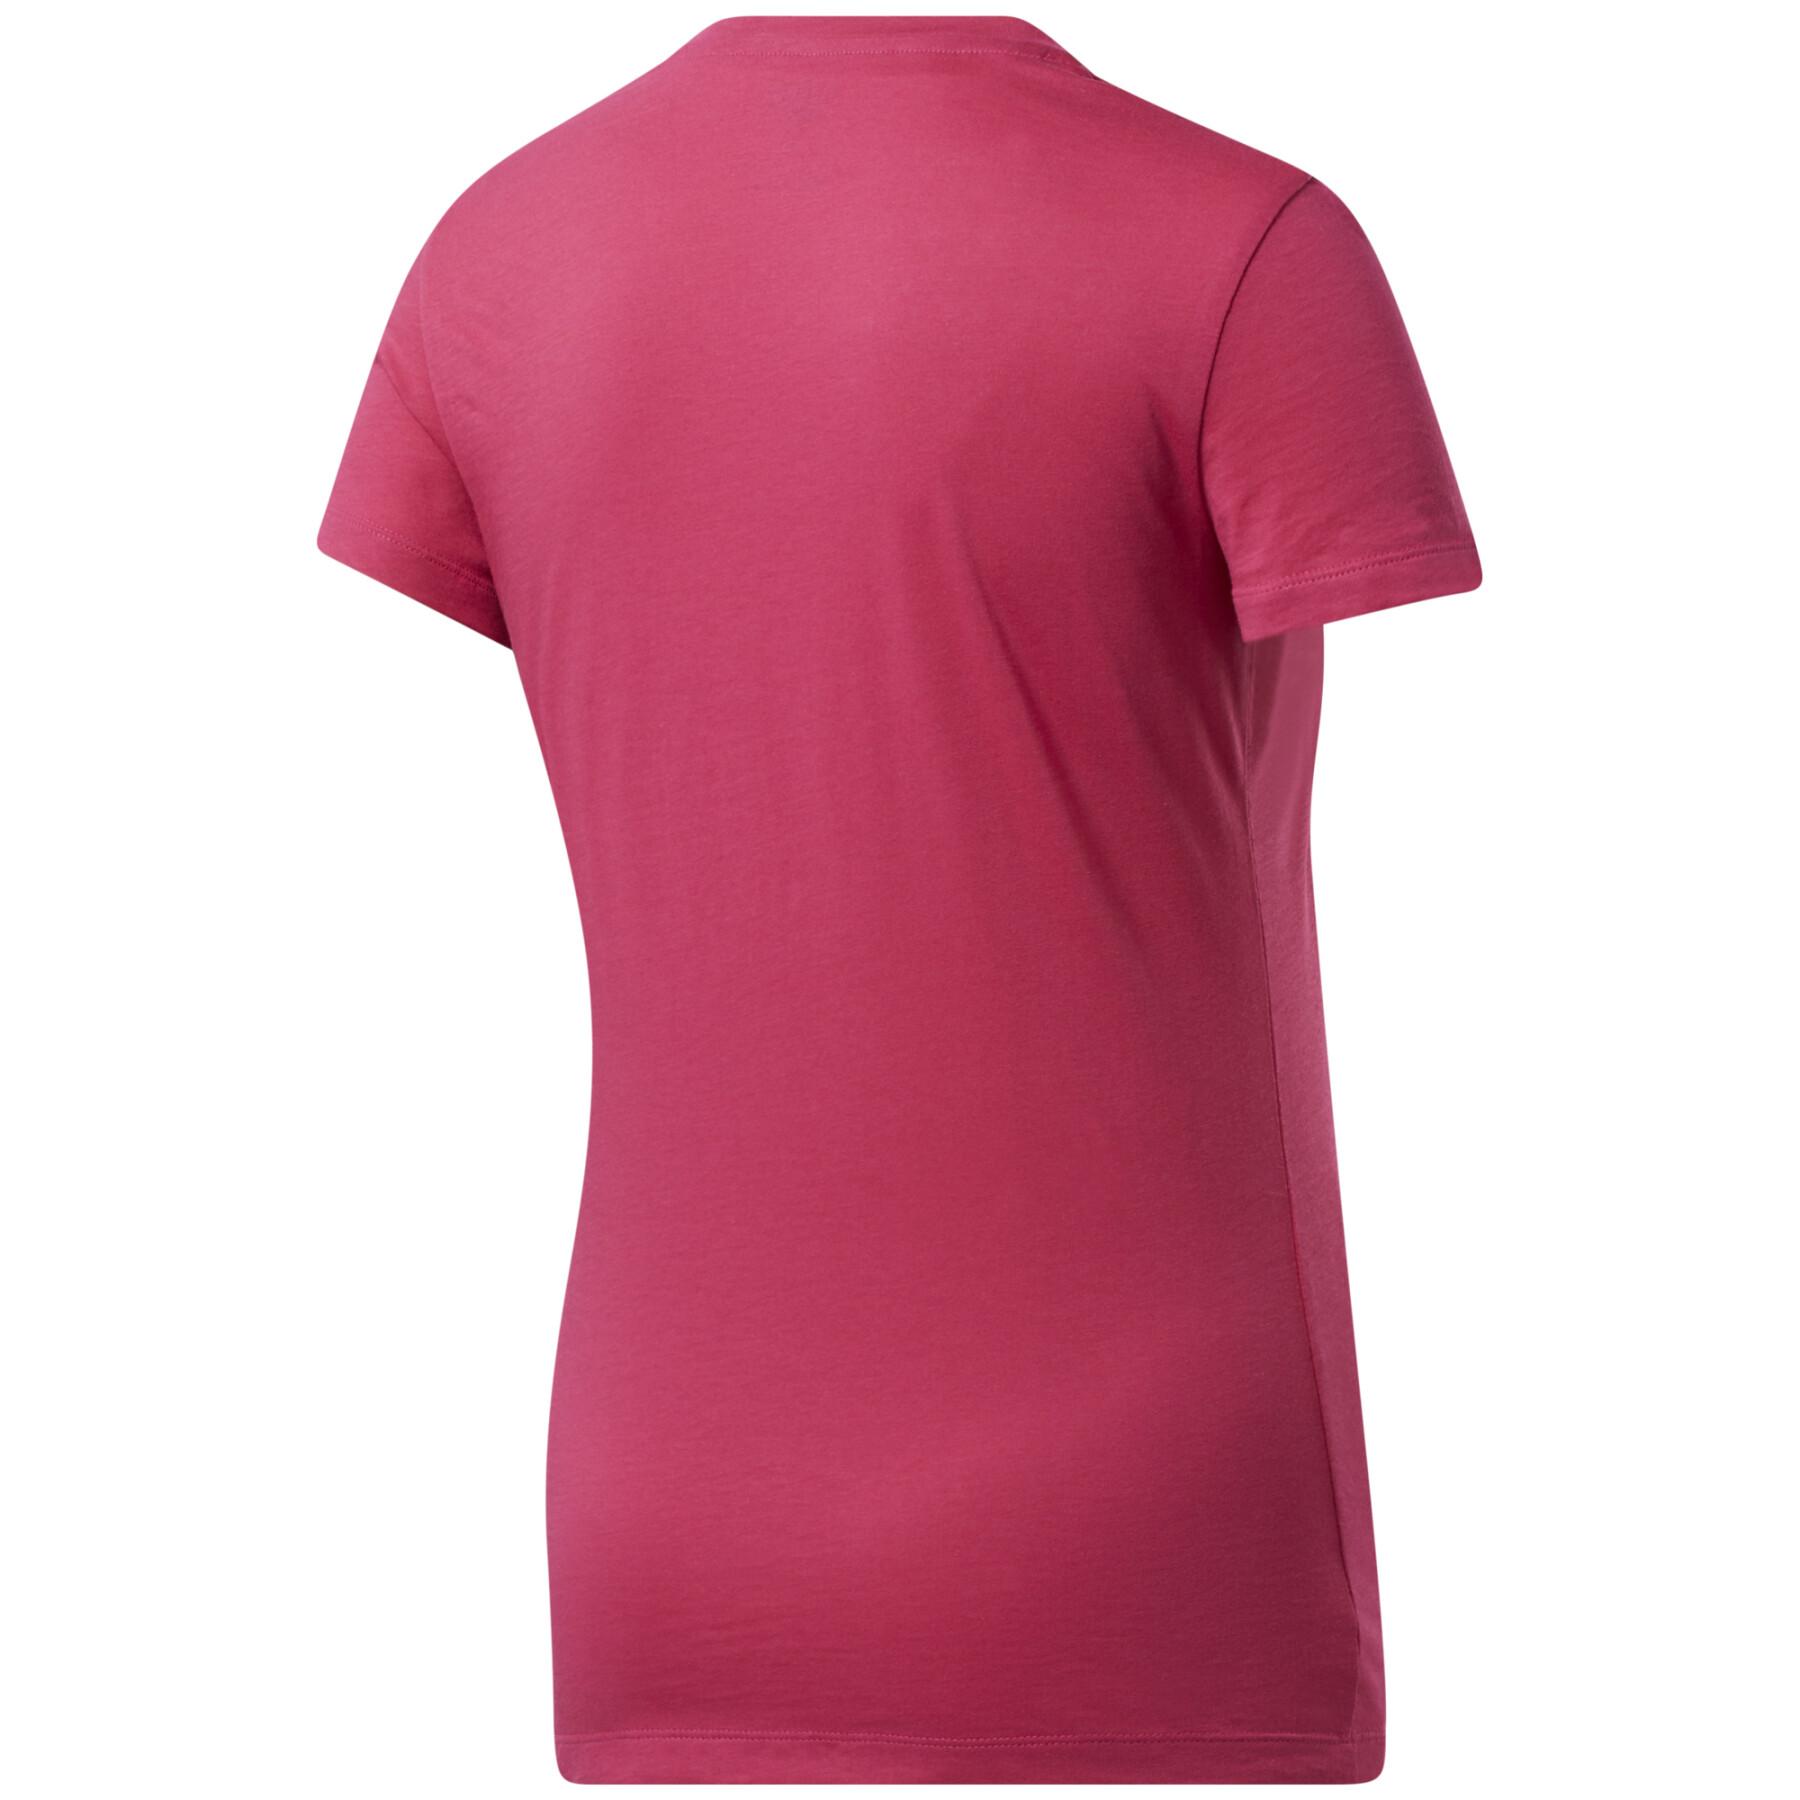 Damen-T-Shirt Reebok Training Essentials Graphic